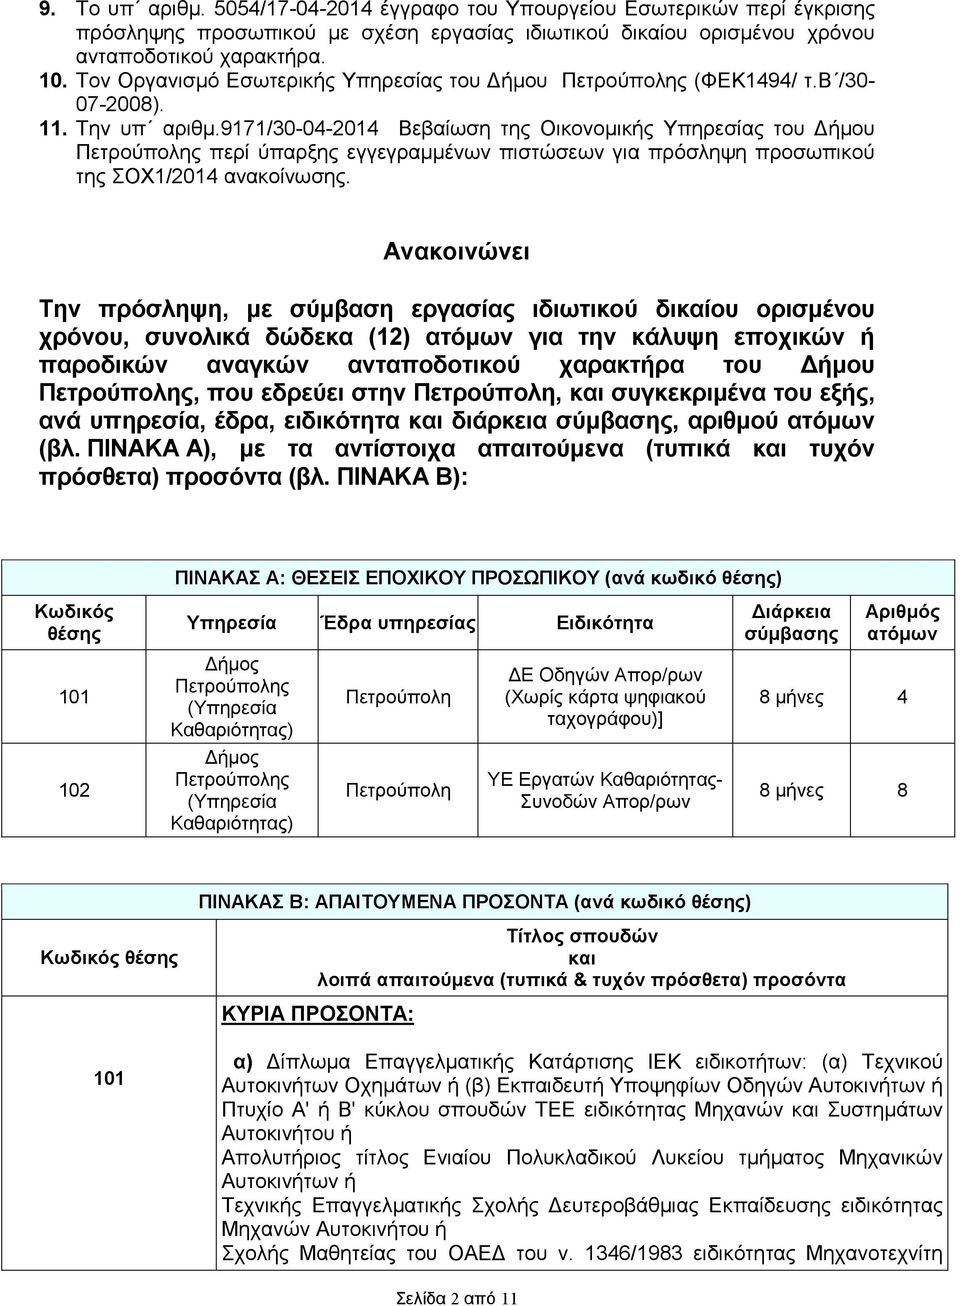 9171/30-04-2014 Βεβαίωση της Οικονοµικής Υπηρεσίας του ήµου Πετρούπολης περί ύπαρξης εγγεγραµµένων πιστώσεων για πρόσληψη προσωπικού της ΣΟΧ1/2014 ανακοίνωσης.